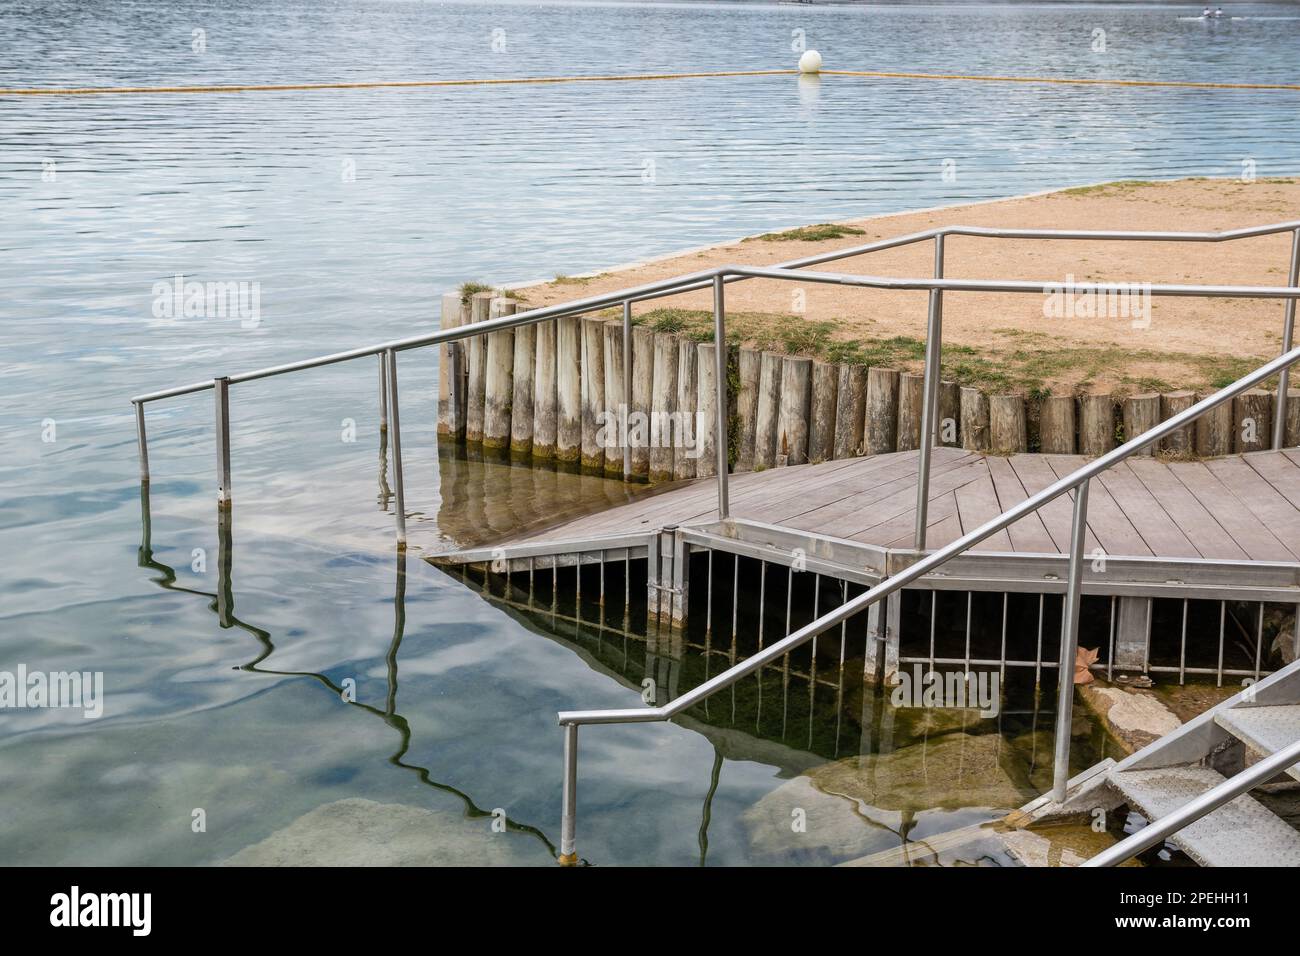 Un fauteuil roulant handicapé est accessible à la zone de baignade du lac Banyoles, Banyoles, Catalogne, Espagne Banque D'Images